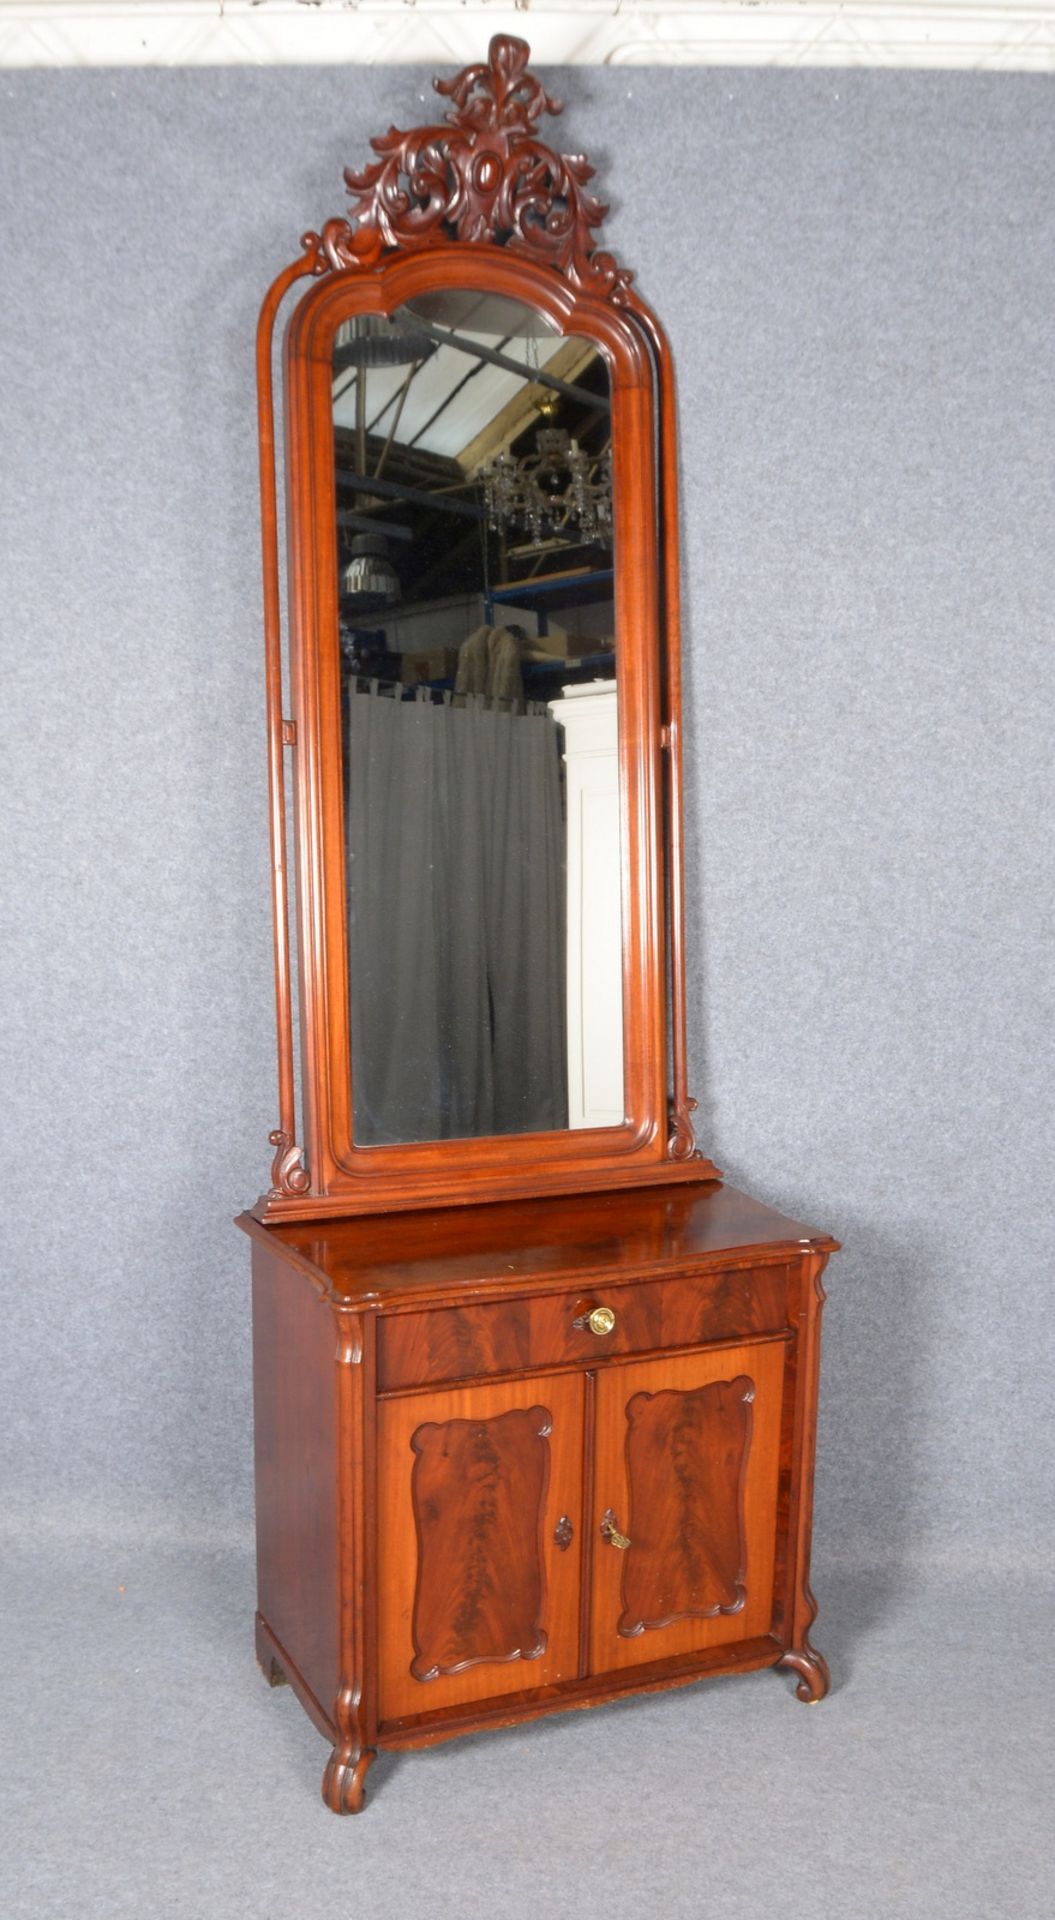 Kommode mit Aufsatzspiegel, Mahagoni auf Weichholz, Spiegelma&szlig;e 140 x 50 cm